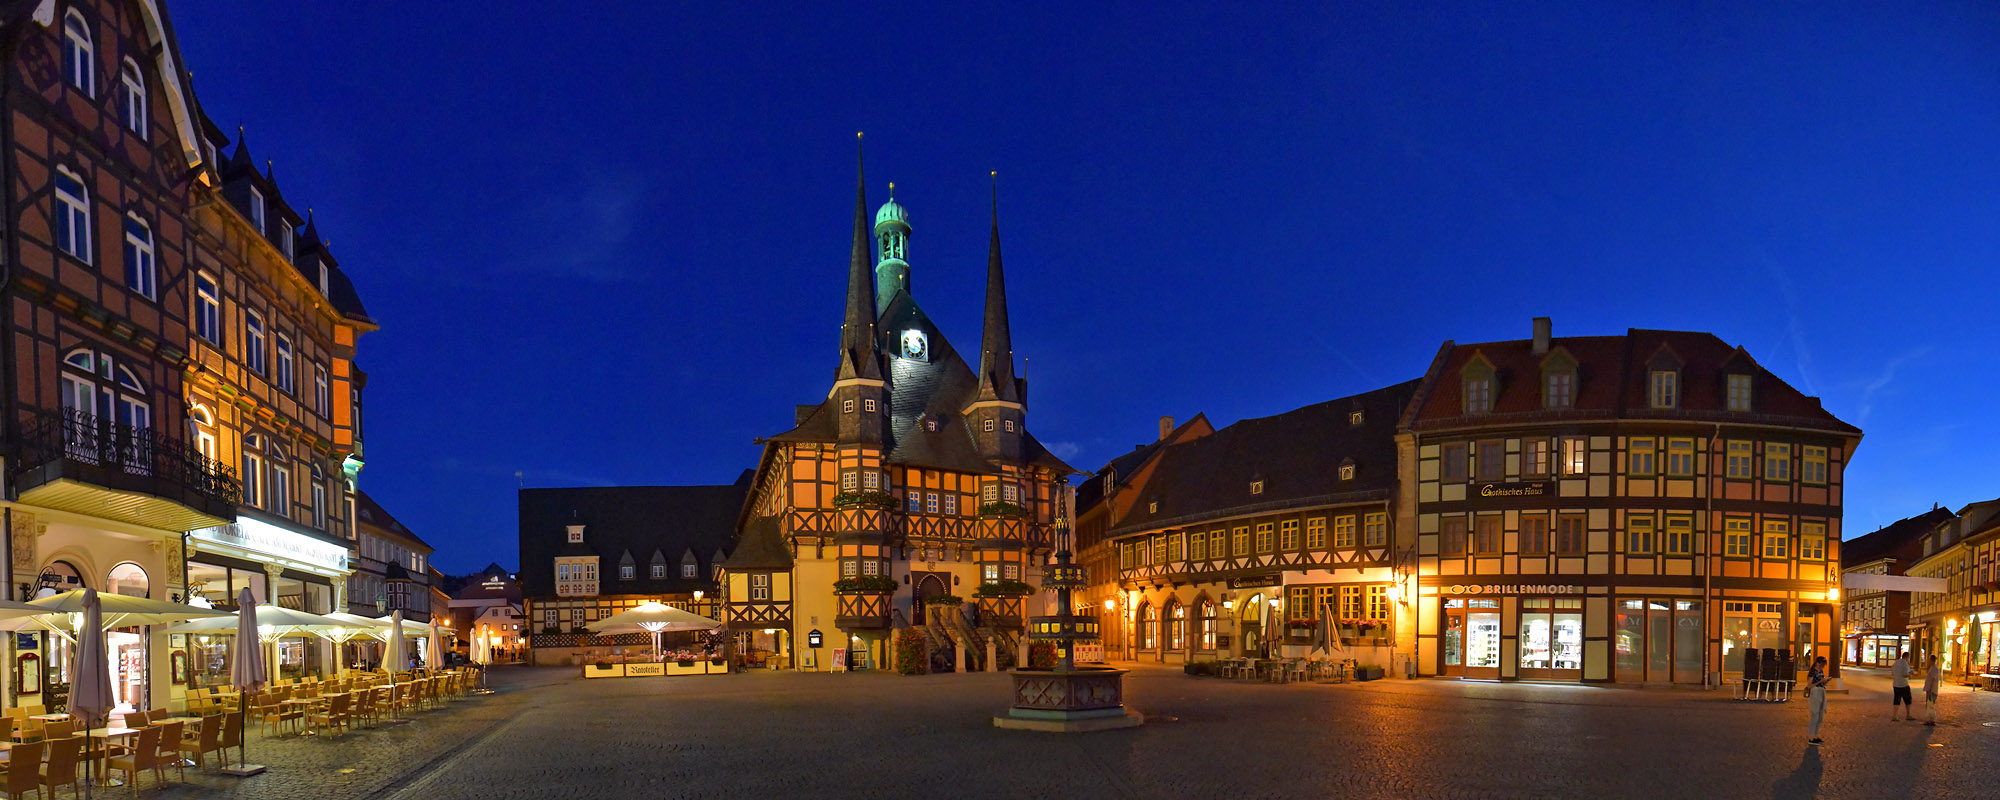 Das Rathaus in Wernigerode am Abend